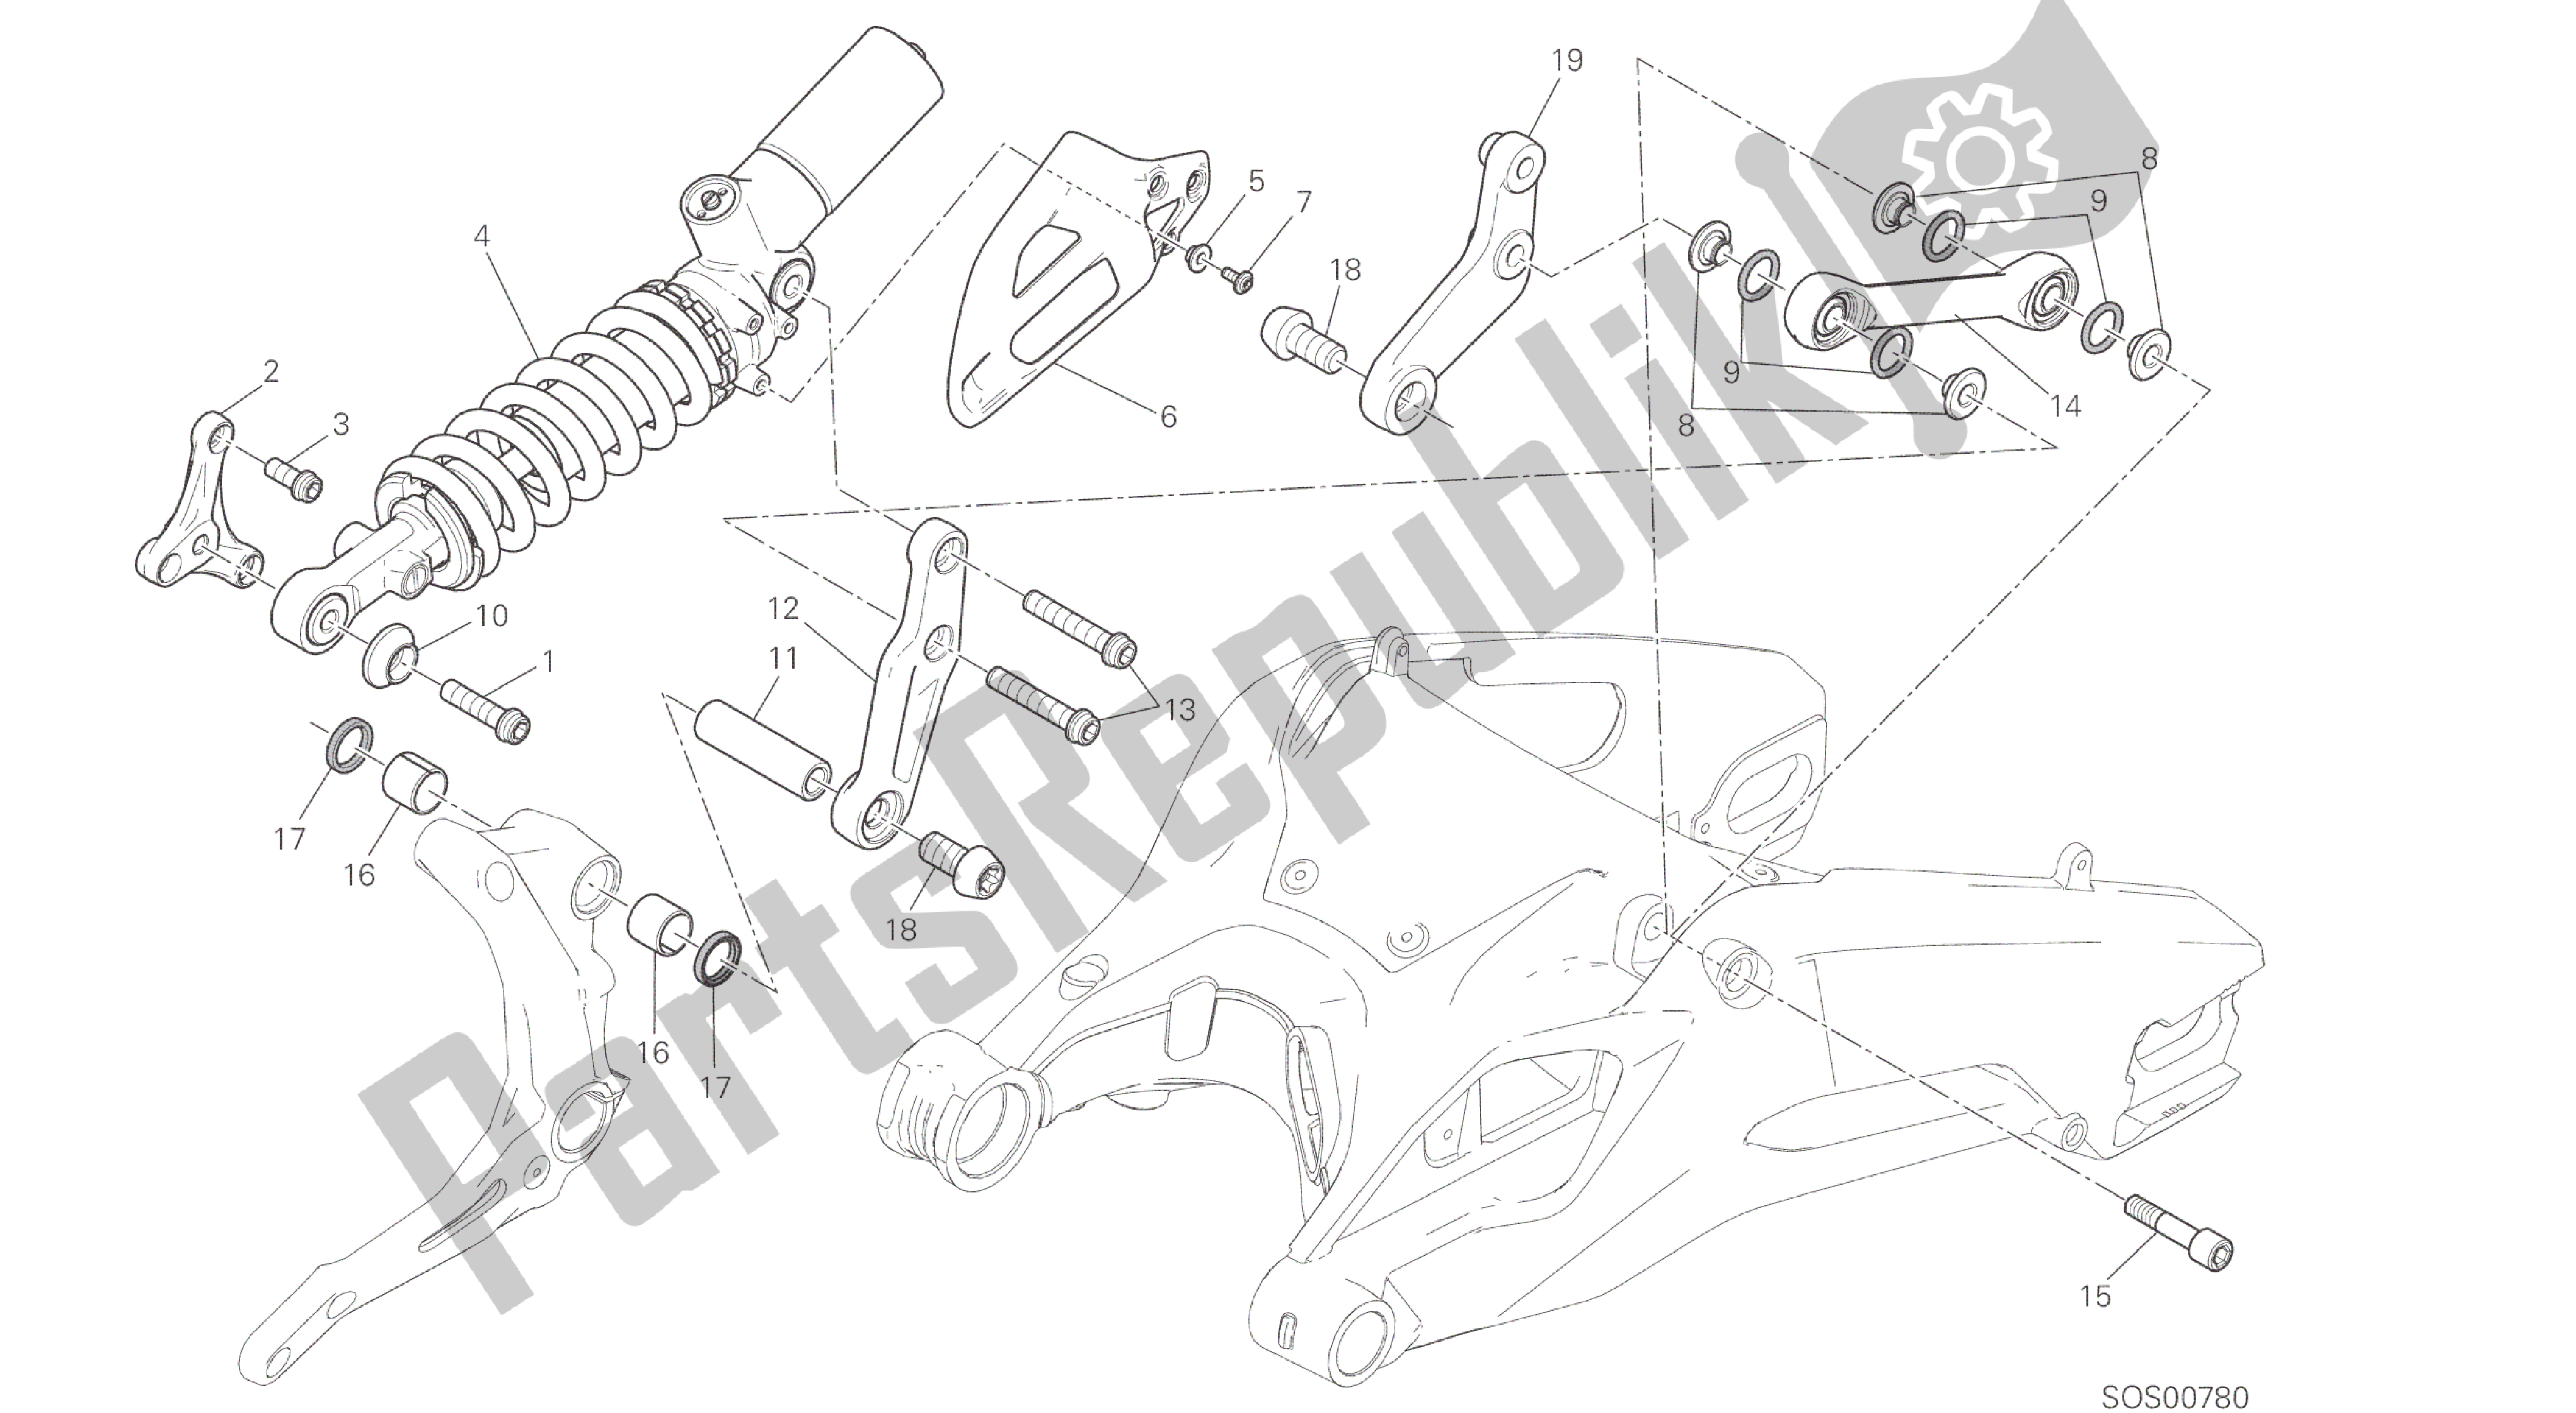 Alle onderdelen voor de Tekening 028 - Sospensione Posteriore [mod: 959,959 Aws] Groepsframe van de Ducati Panigale 959 2016